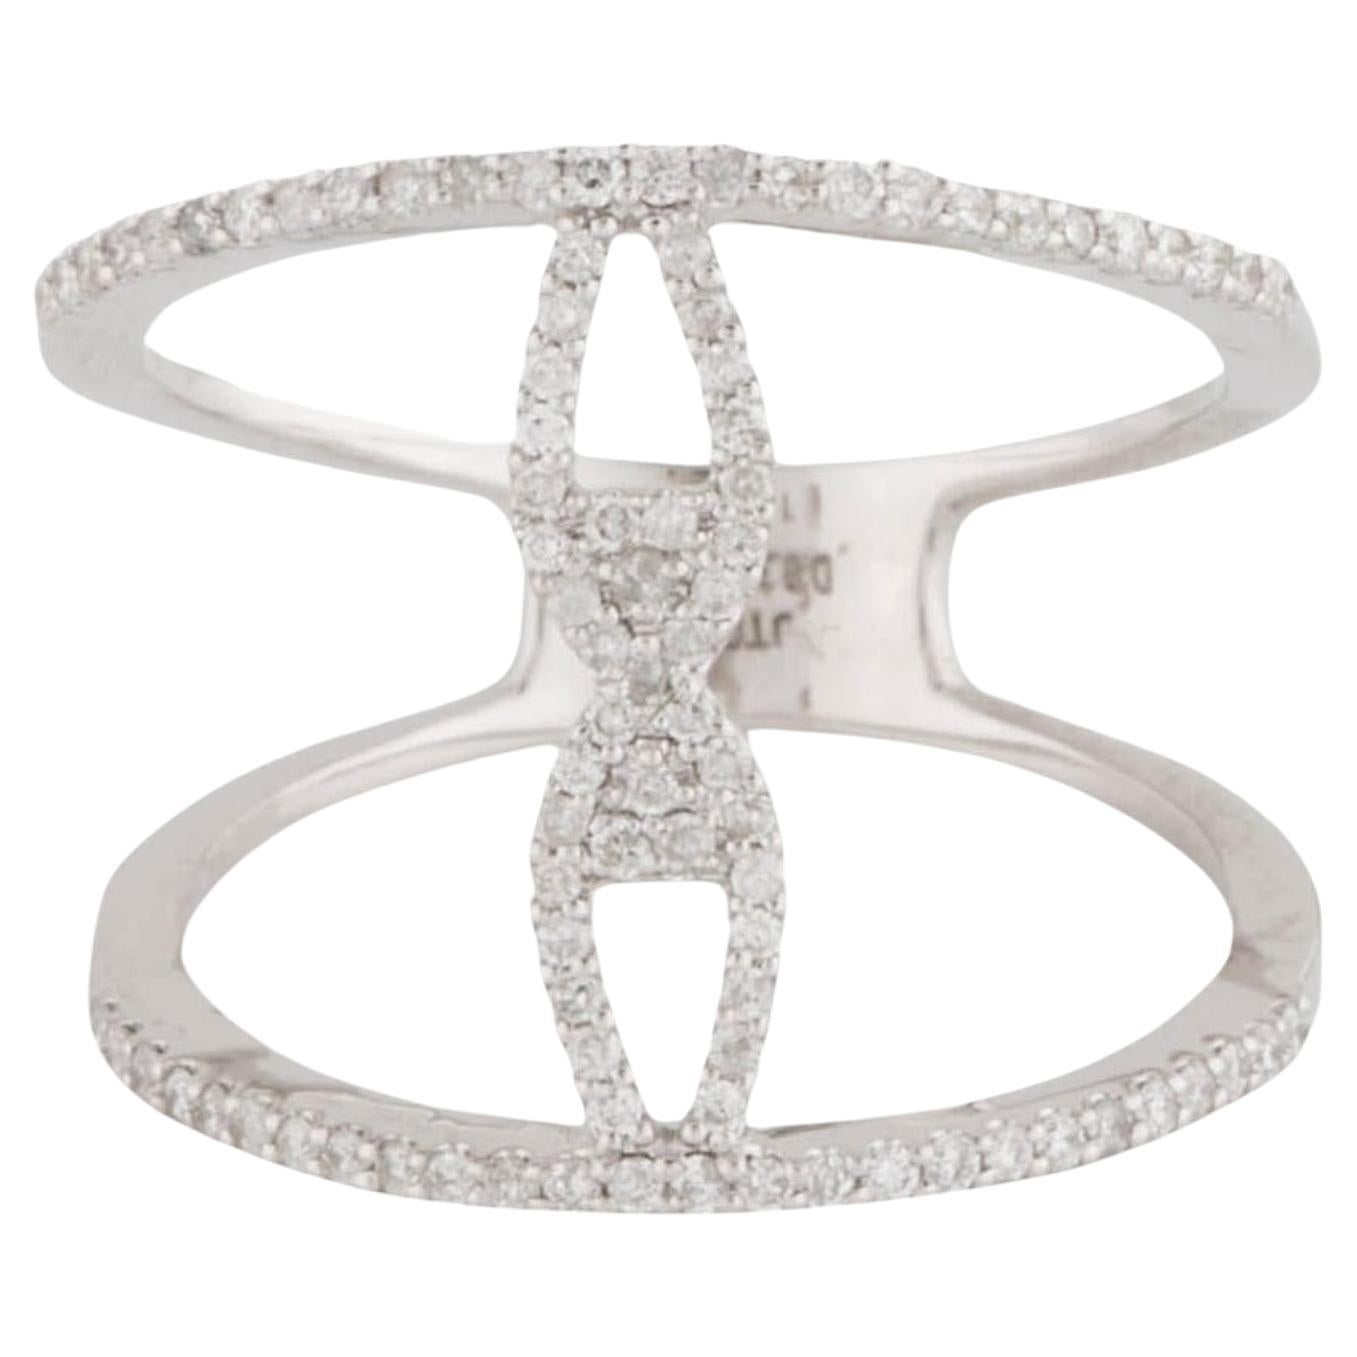 14K Diamond Fashion Band Ring - Size 6.25 - Stylish Elegance & Timeless Sparkle